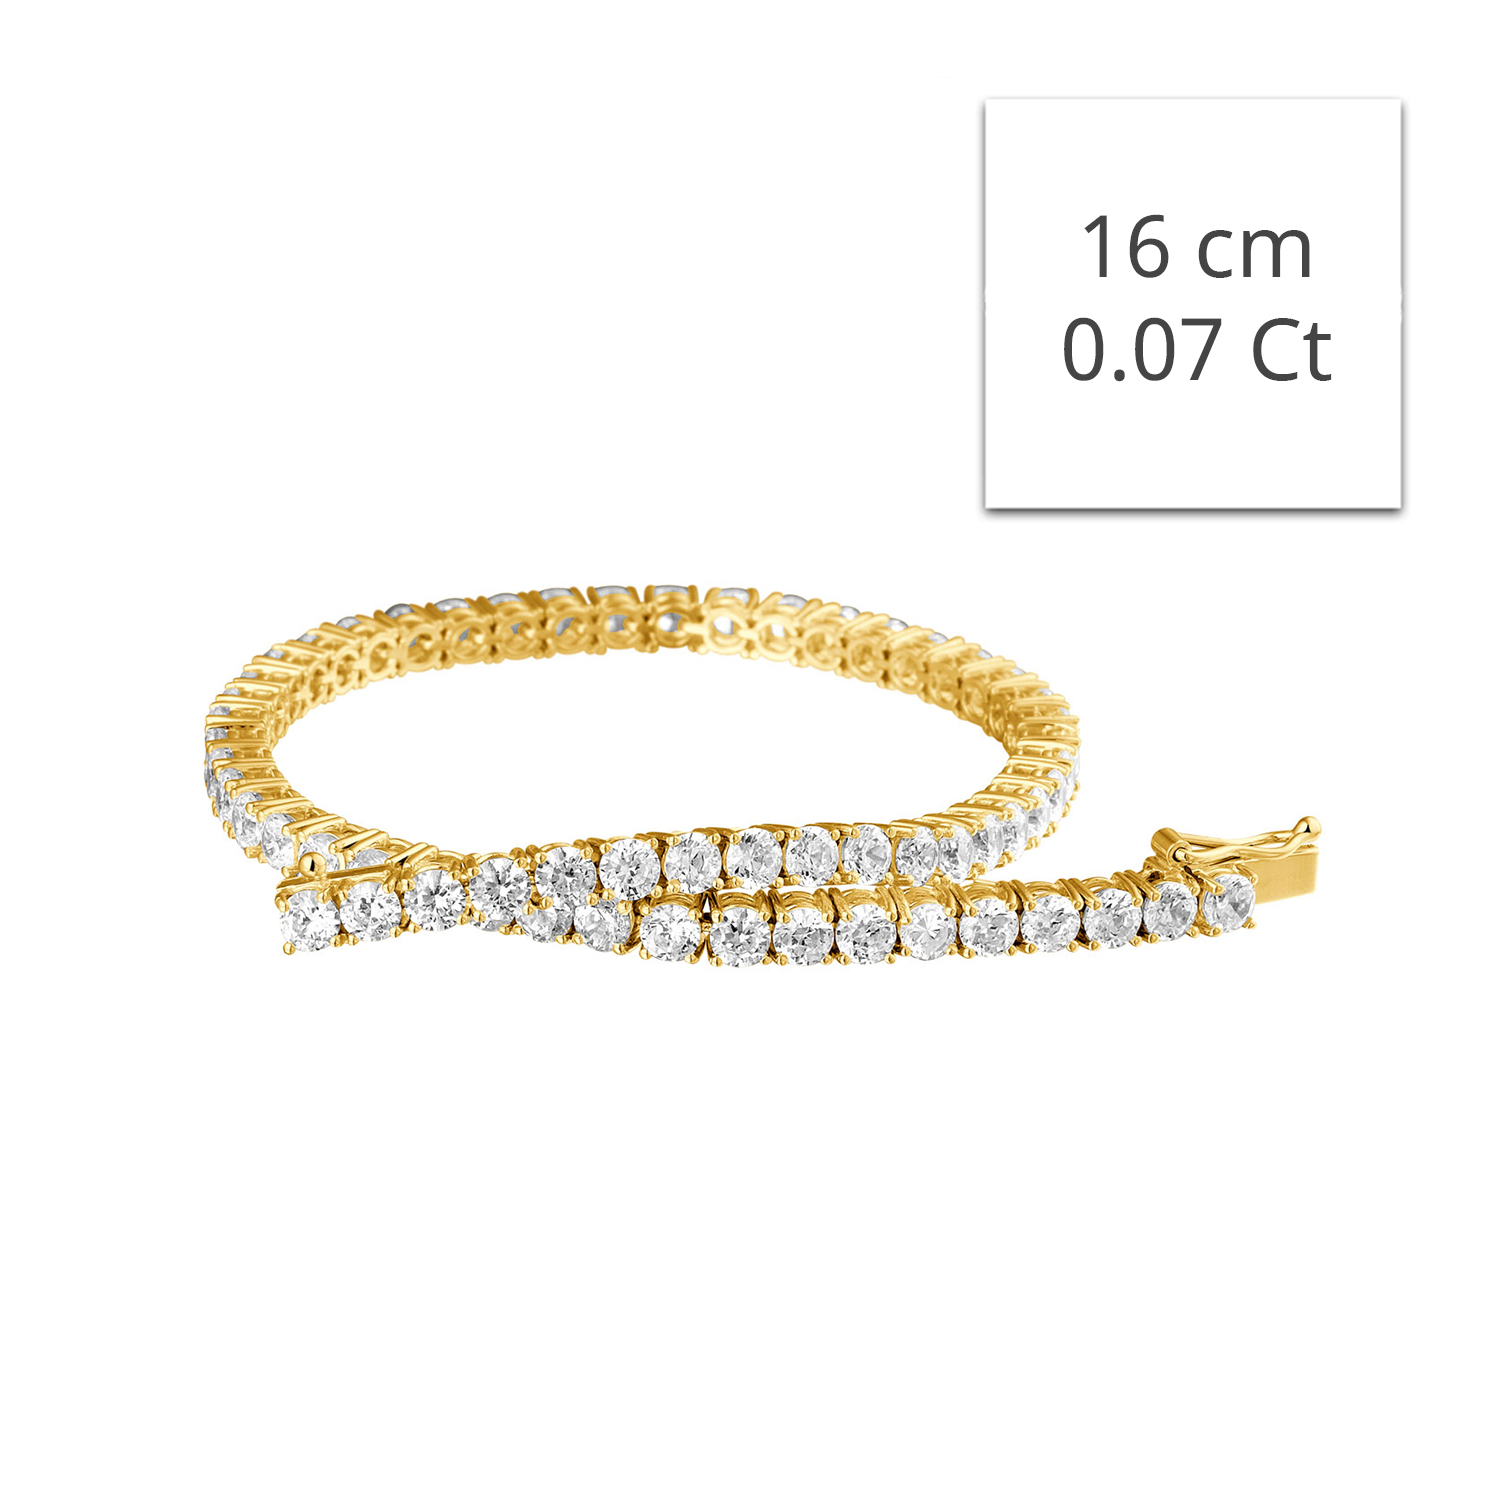 Faut-il choisir un bracelet en or blanc ou en or jaune ?